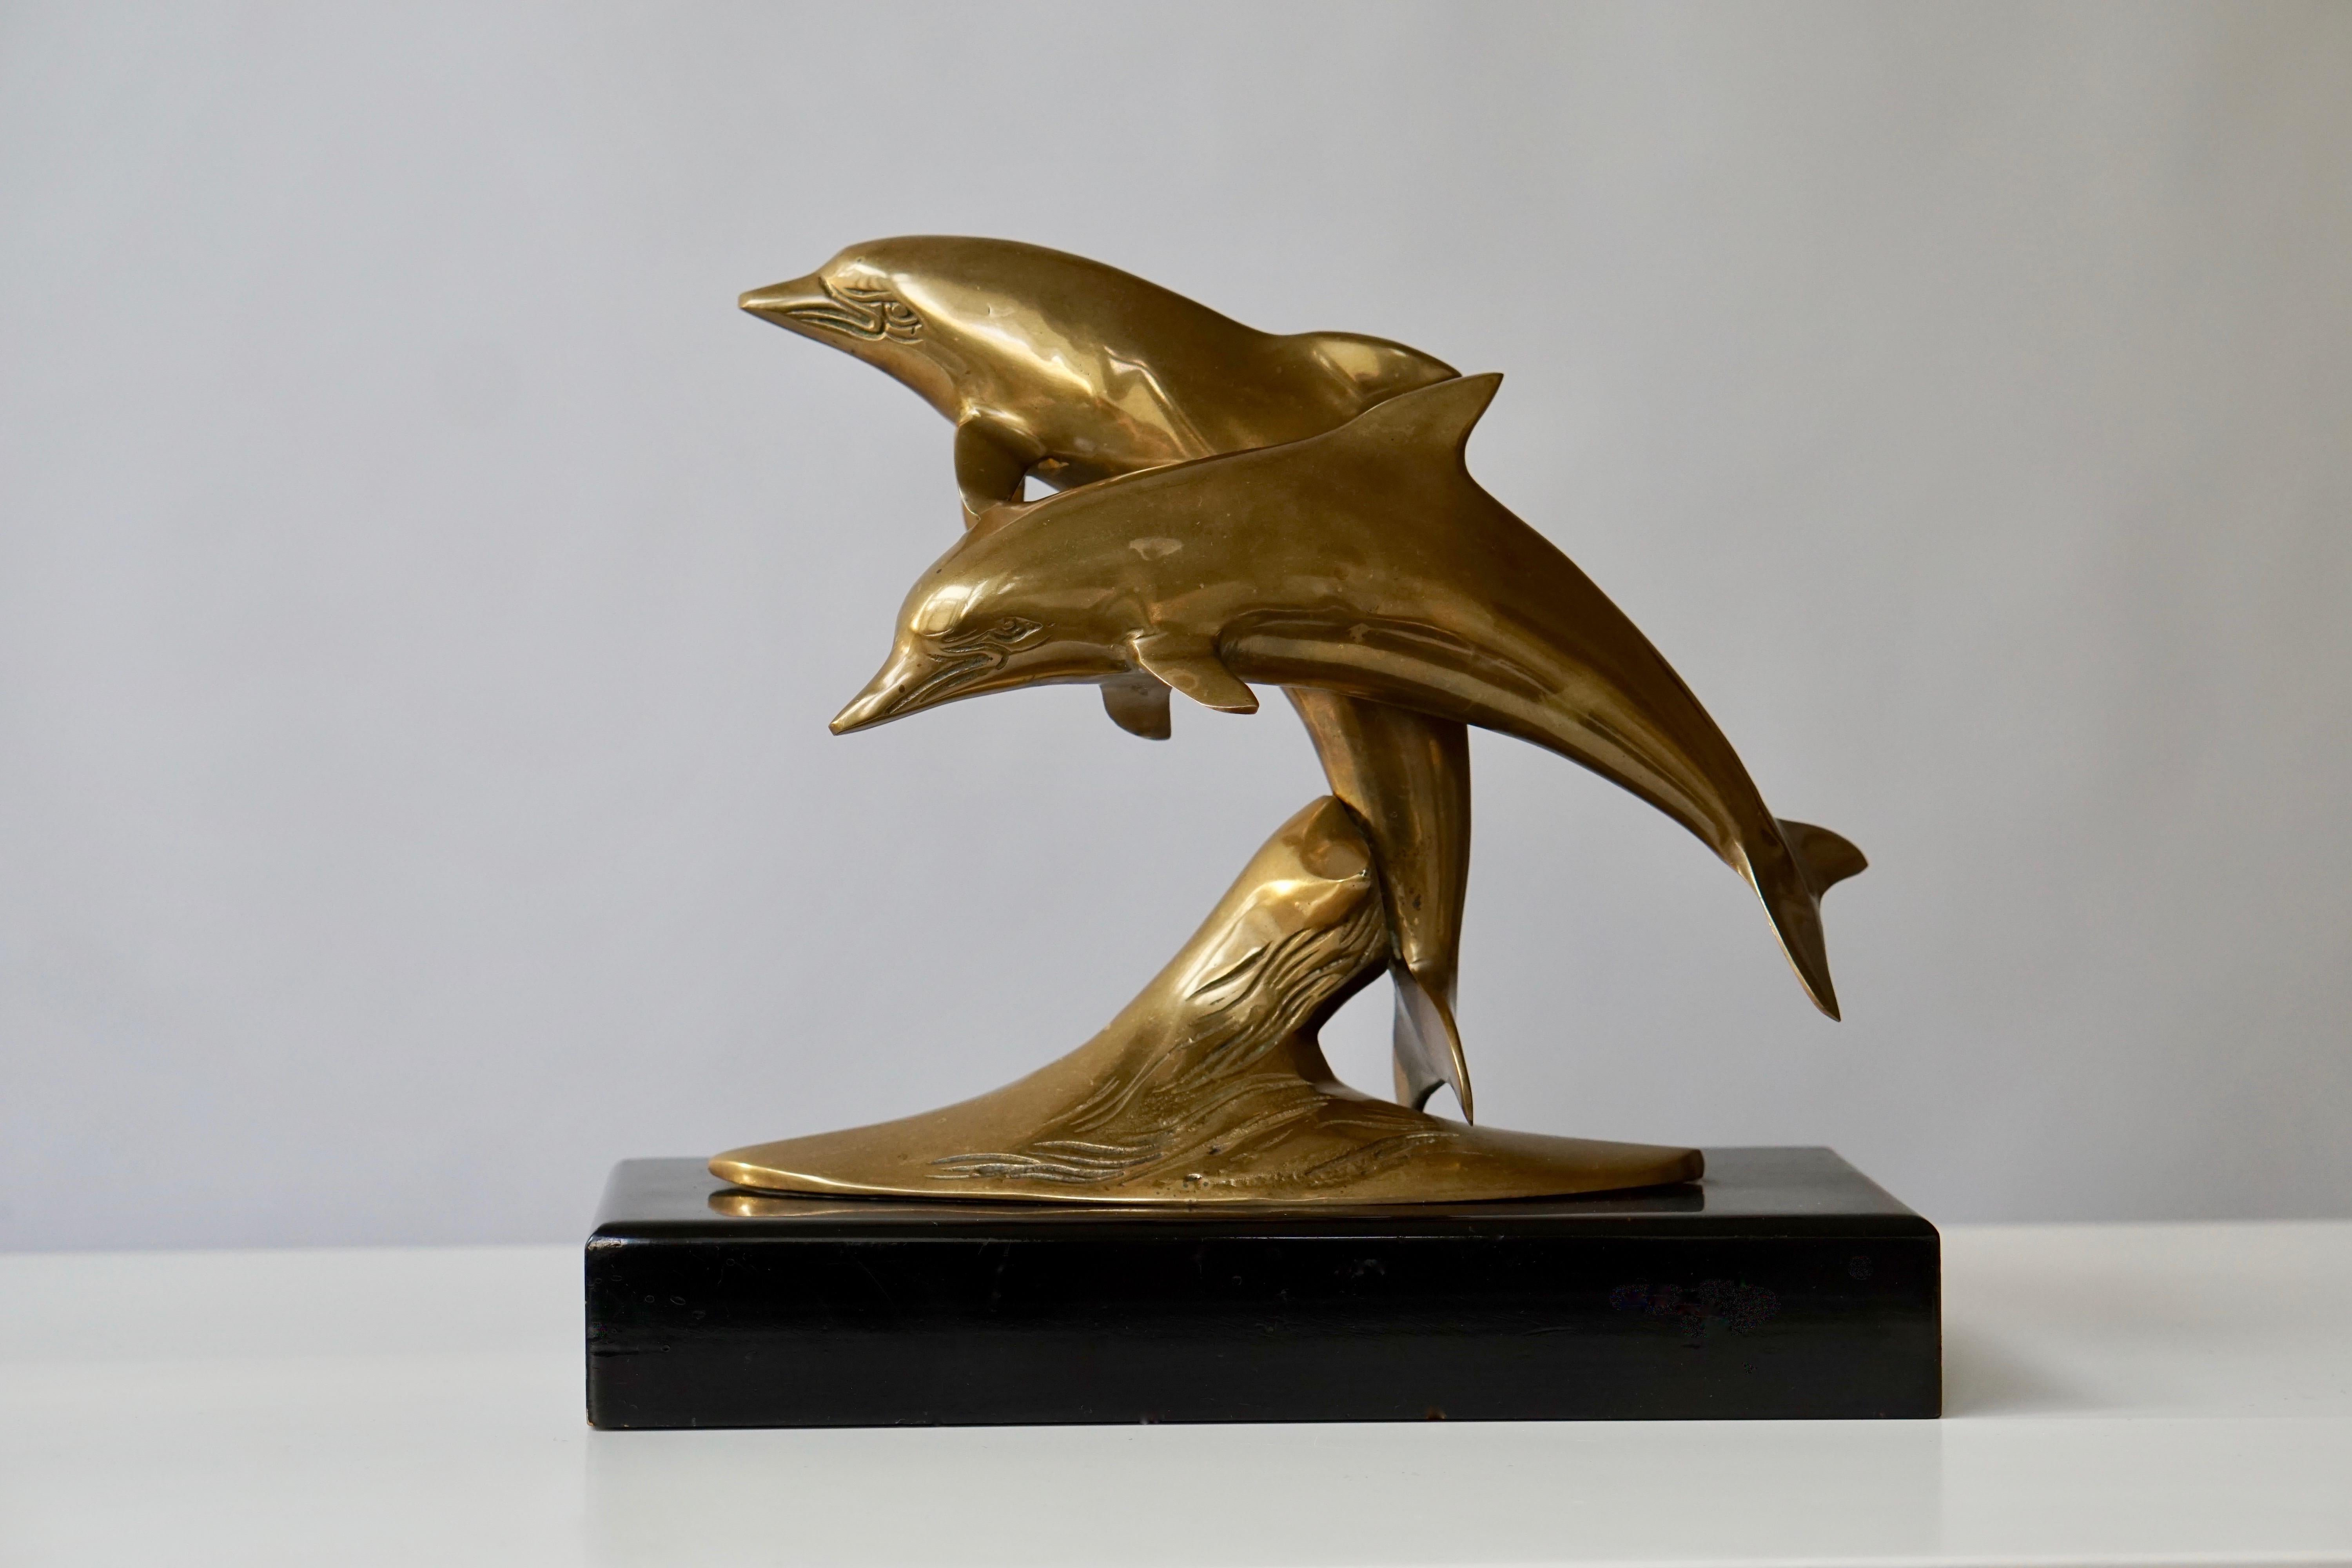 Sculpture de dauphins en laiton sur une base en bois.
Mesures : Hauteur 24 cm.
Largeur 27 cm.
Profondeur 11 cm.